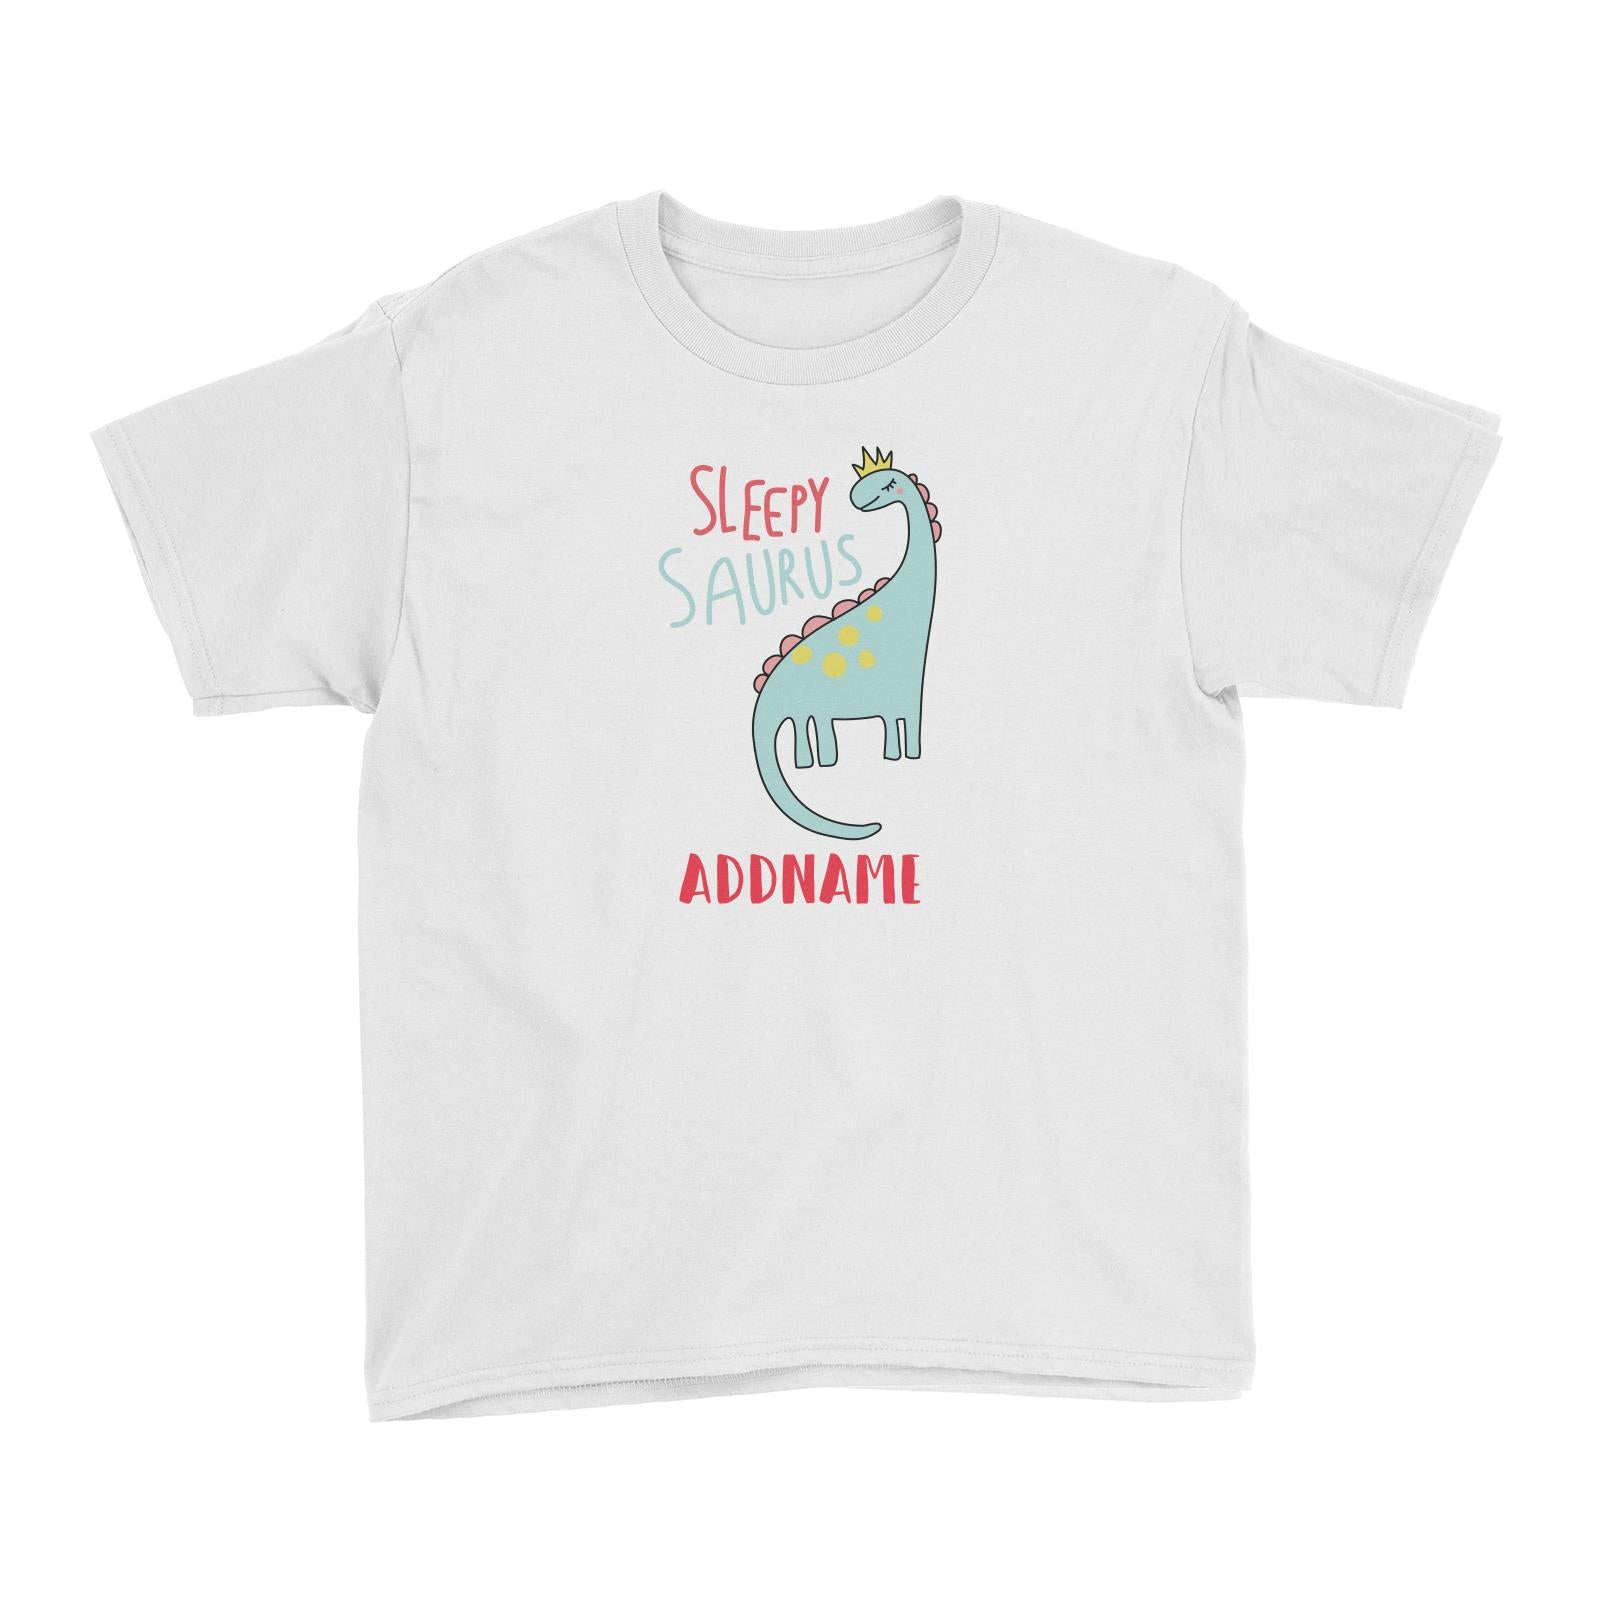 Cool Vibrant Series Sleepysaurus Addname Kid's T-Shirt [SALE]